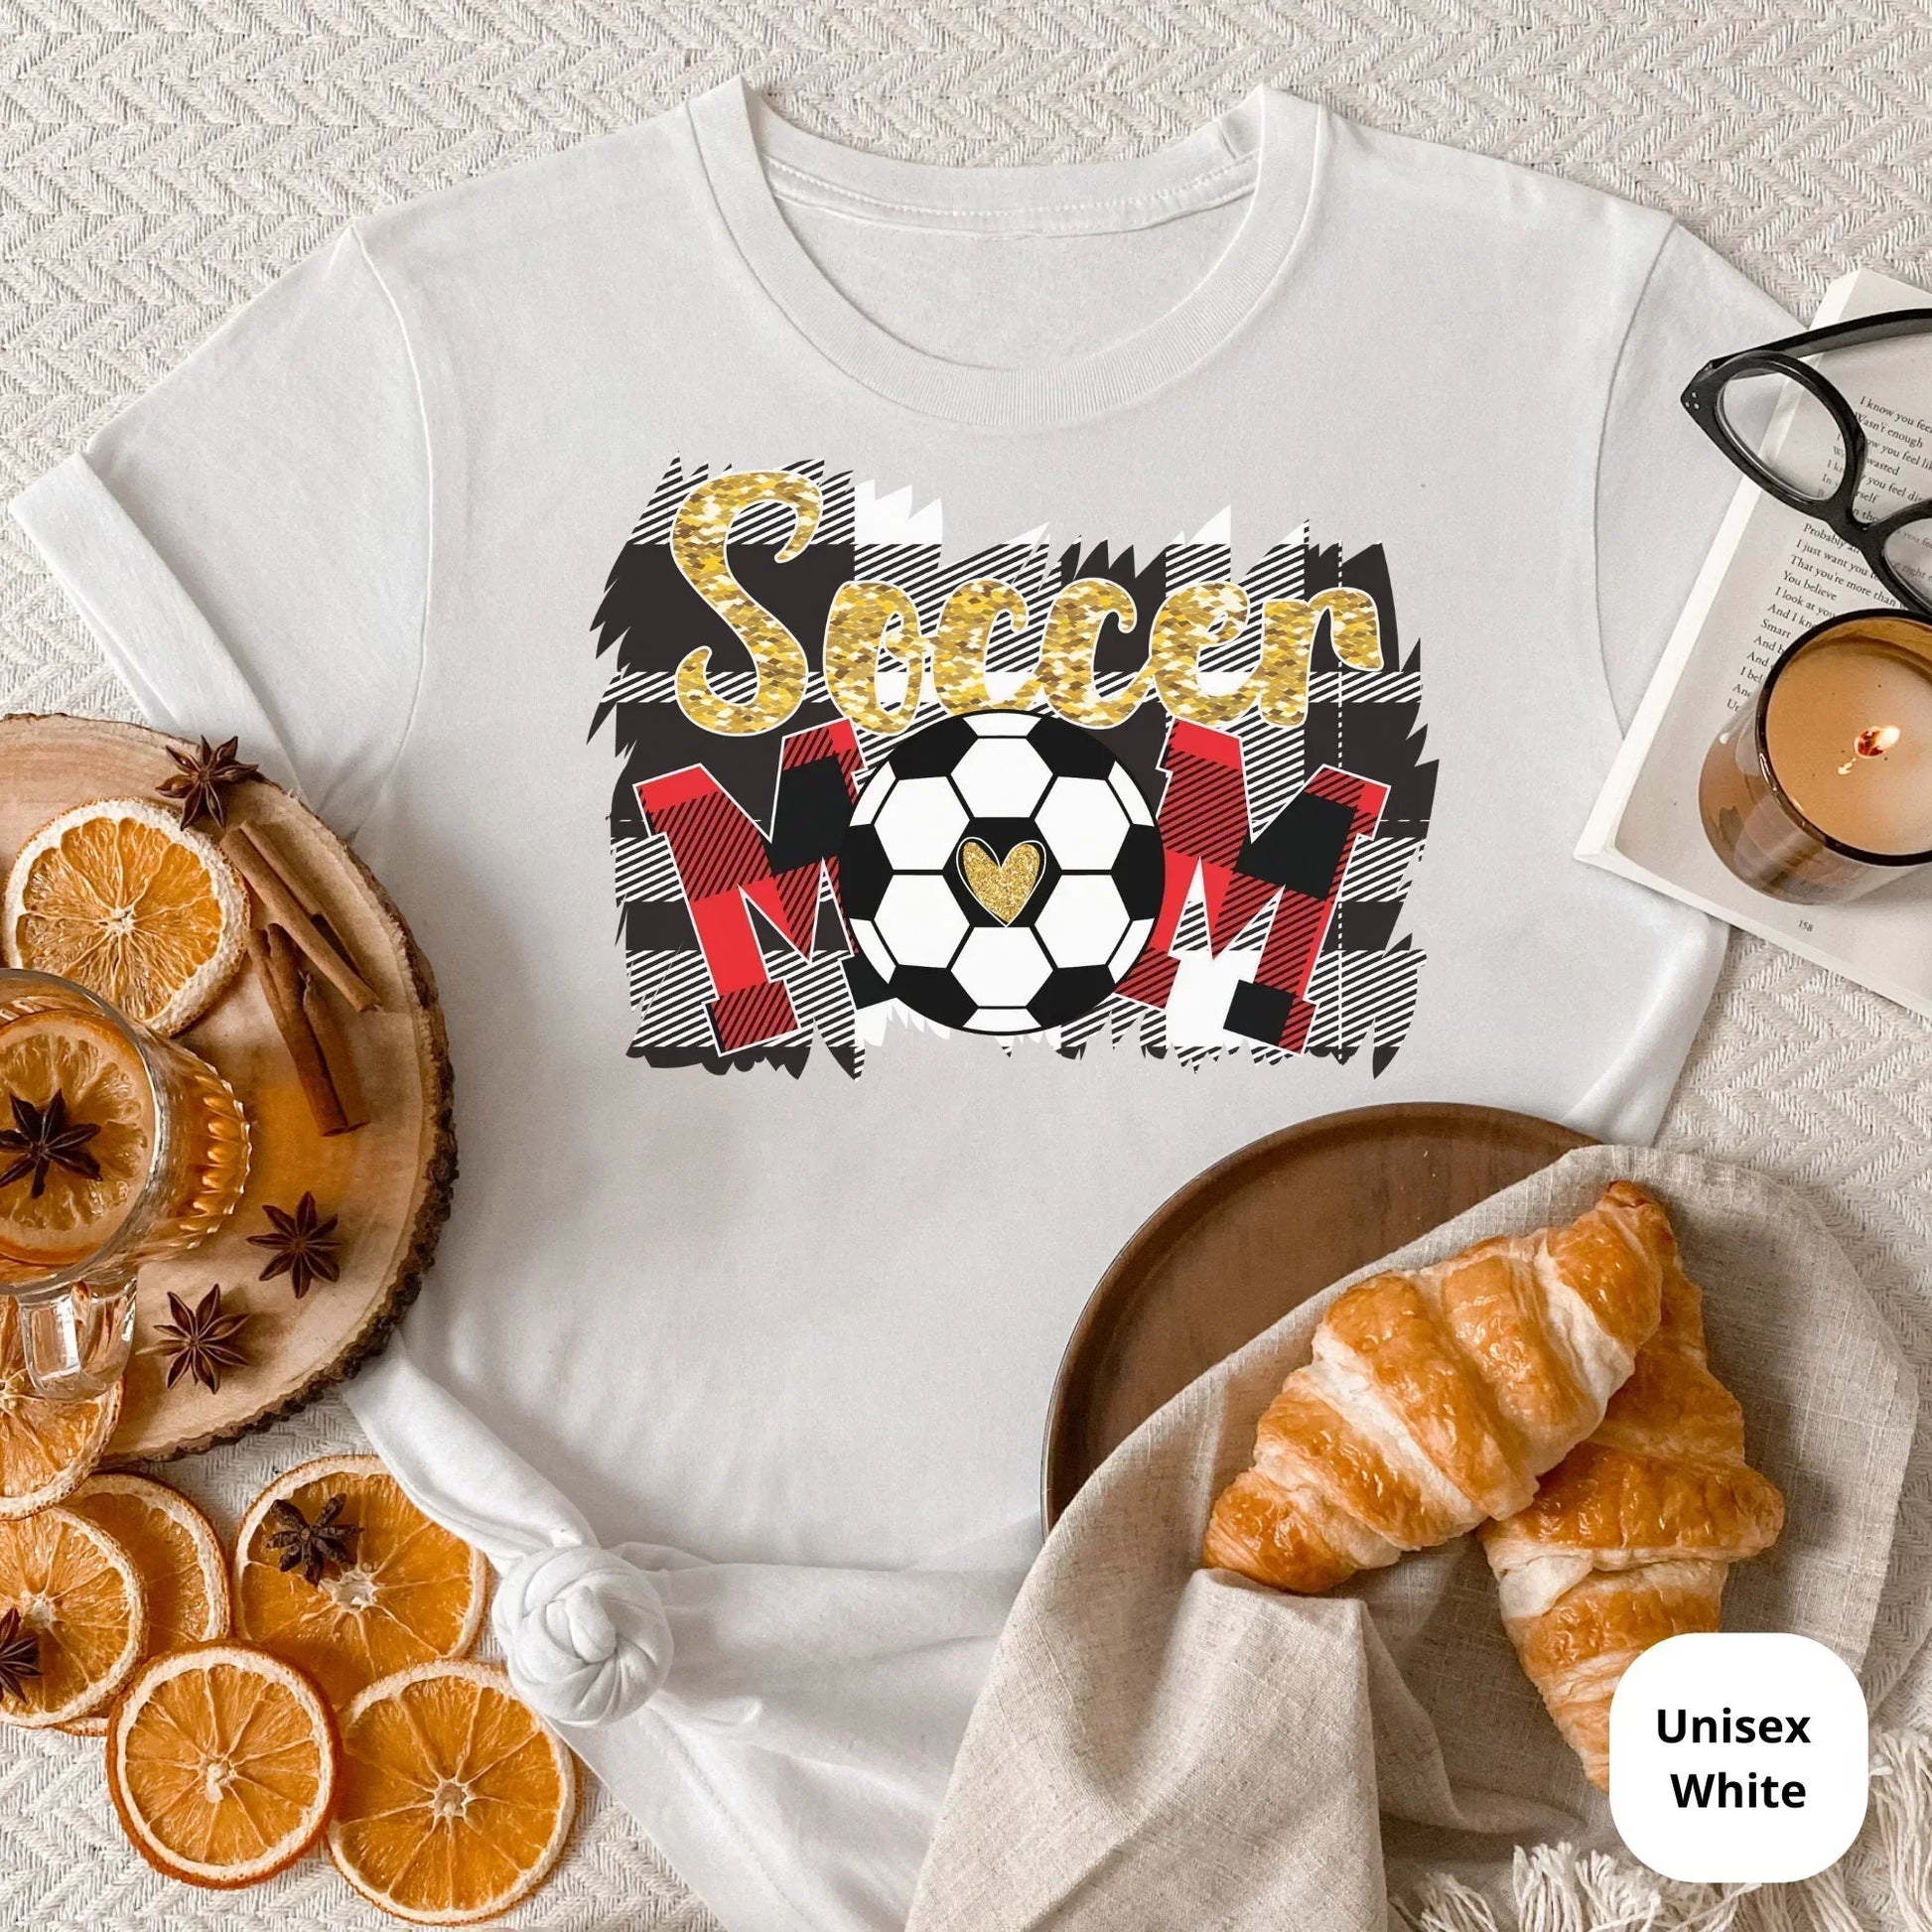 Soccer Mom shirt, Sports Momma T-Shirt, Soccer Baseball, Game Day Tee, Soccer ball, Soccer Player, Team Mommy, Women's Soccer, Gift for Mom HMDesignStudioUS